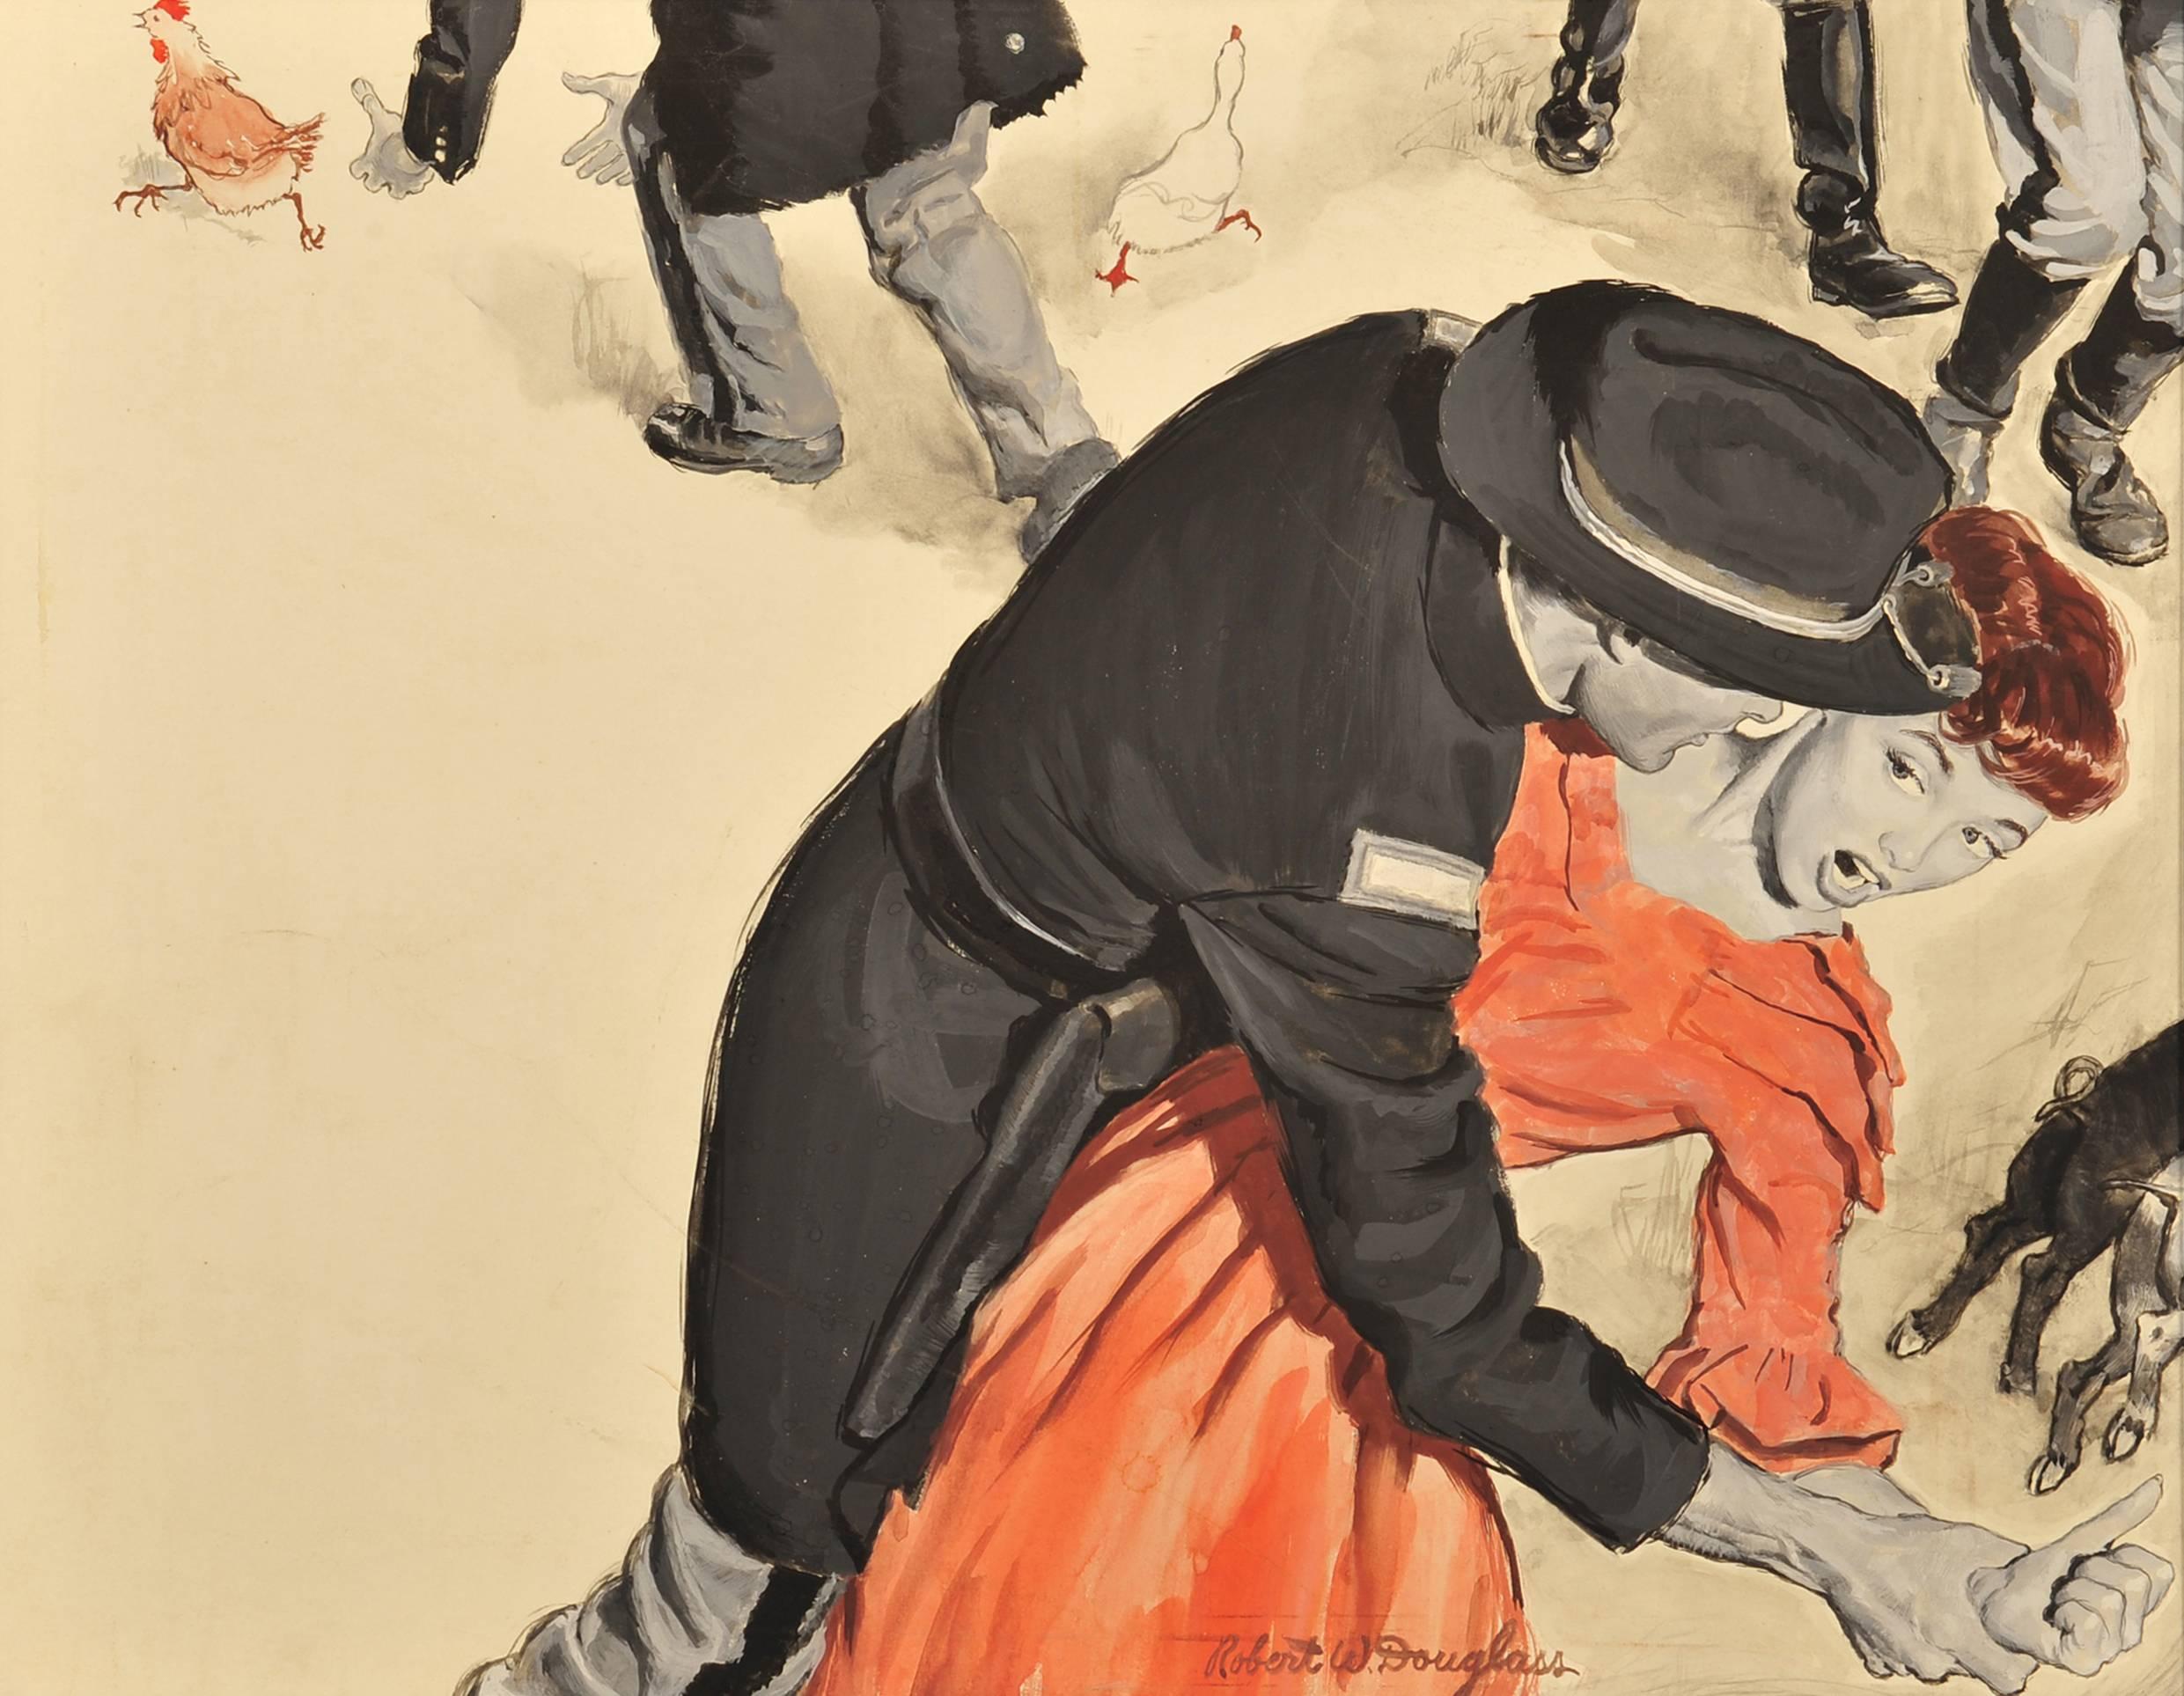 Robert Douglas Figurative Painting – Soldaten schlagen Frauen und Bauerntiere an